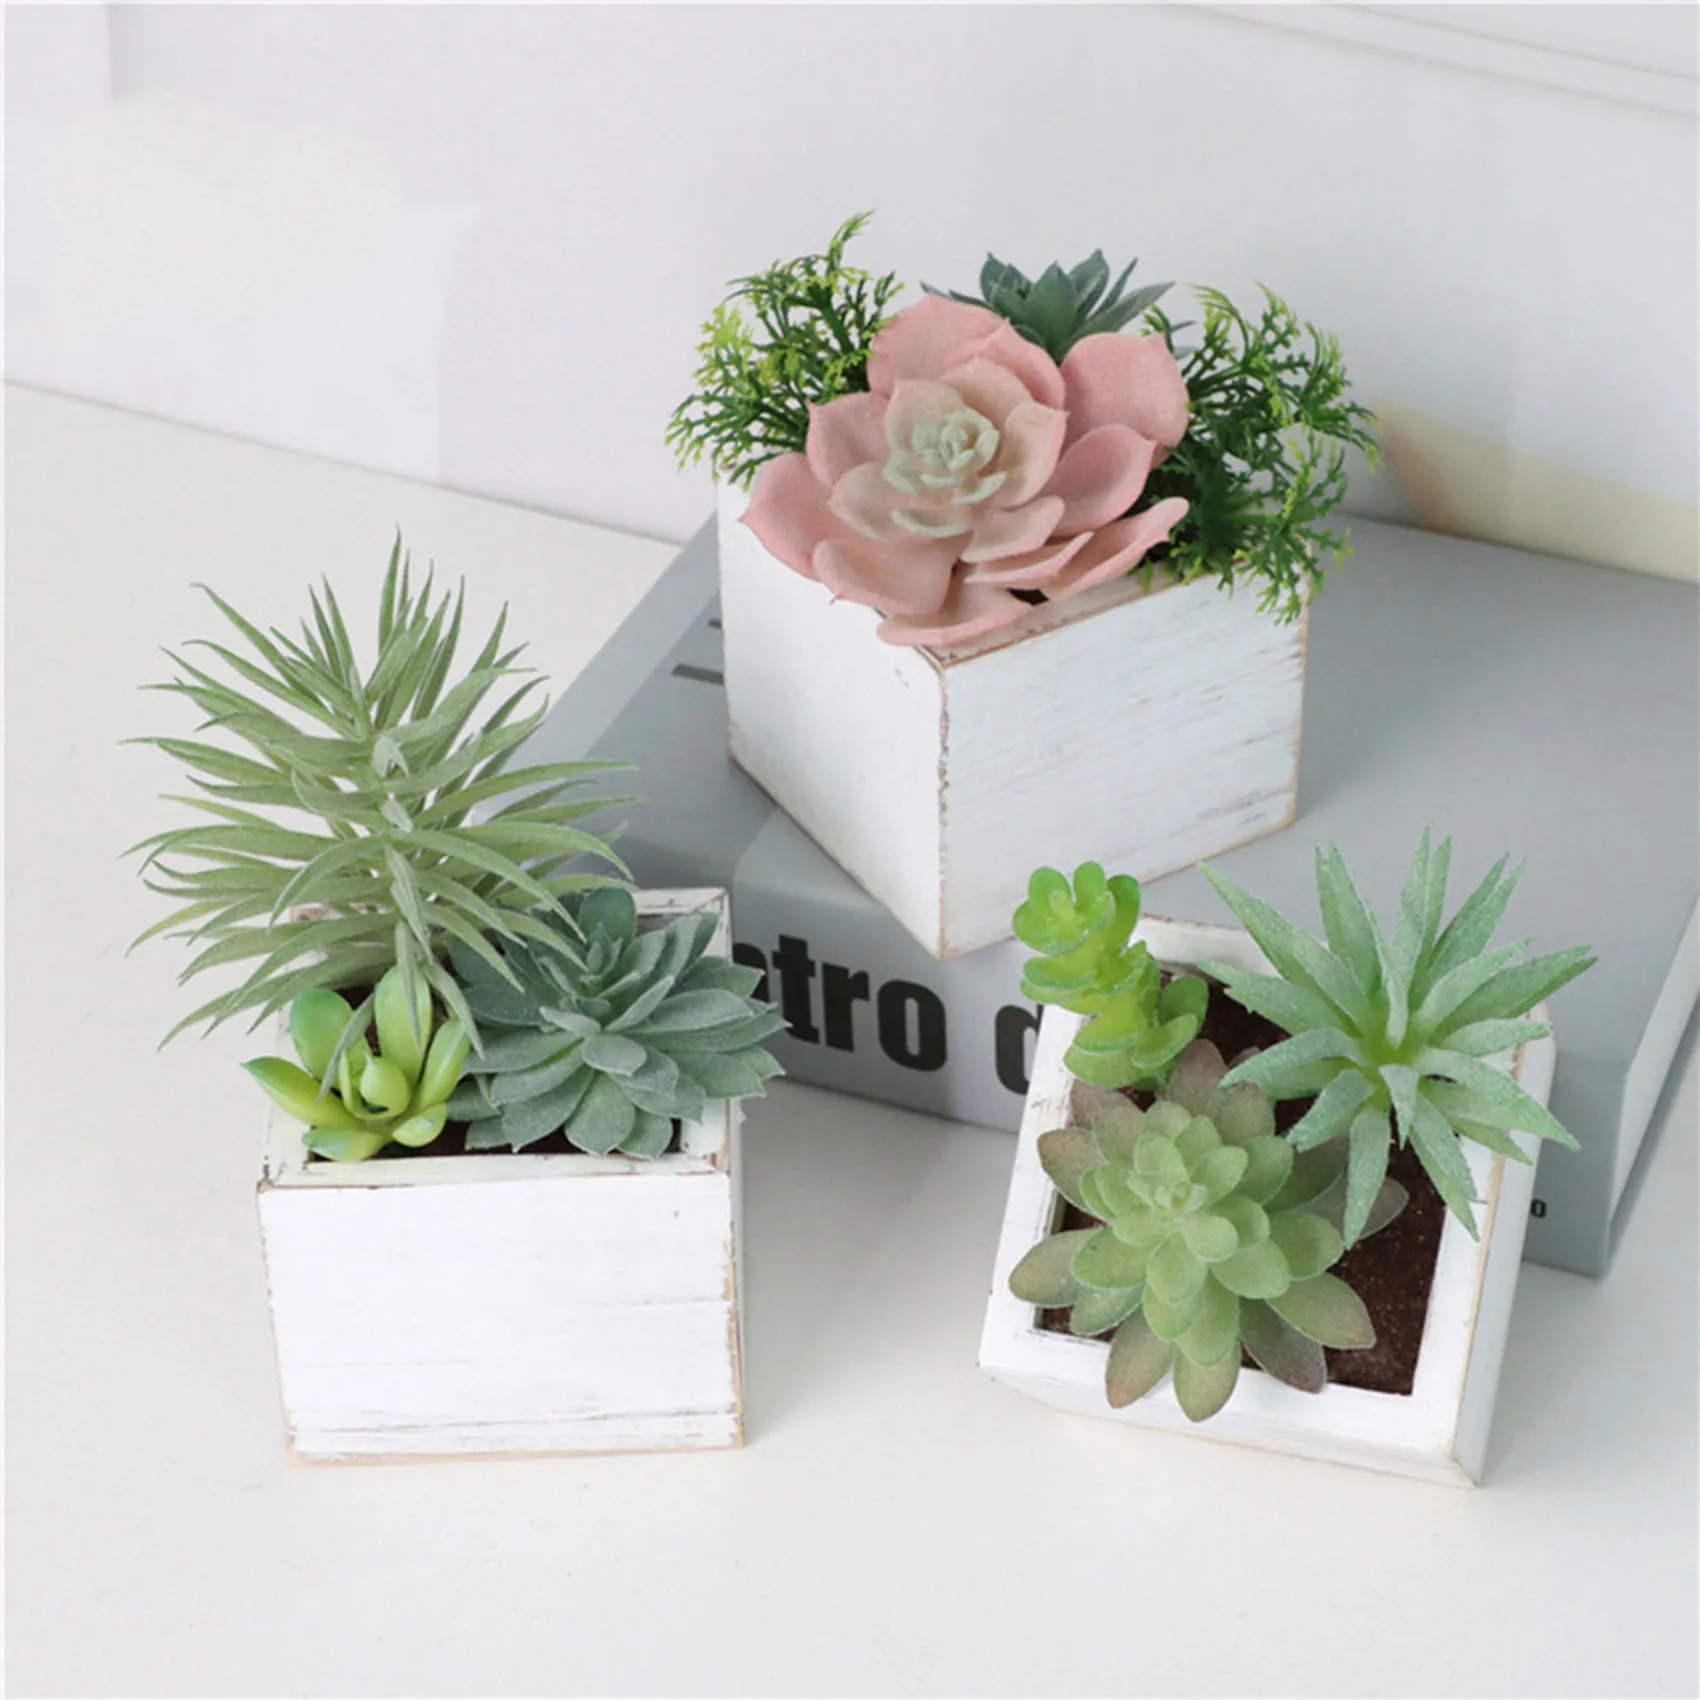 2023 Hot sell Home decor Wholesale Mini Artificial flower pot decoration succulent plants Artificial plants